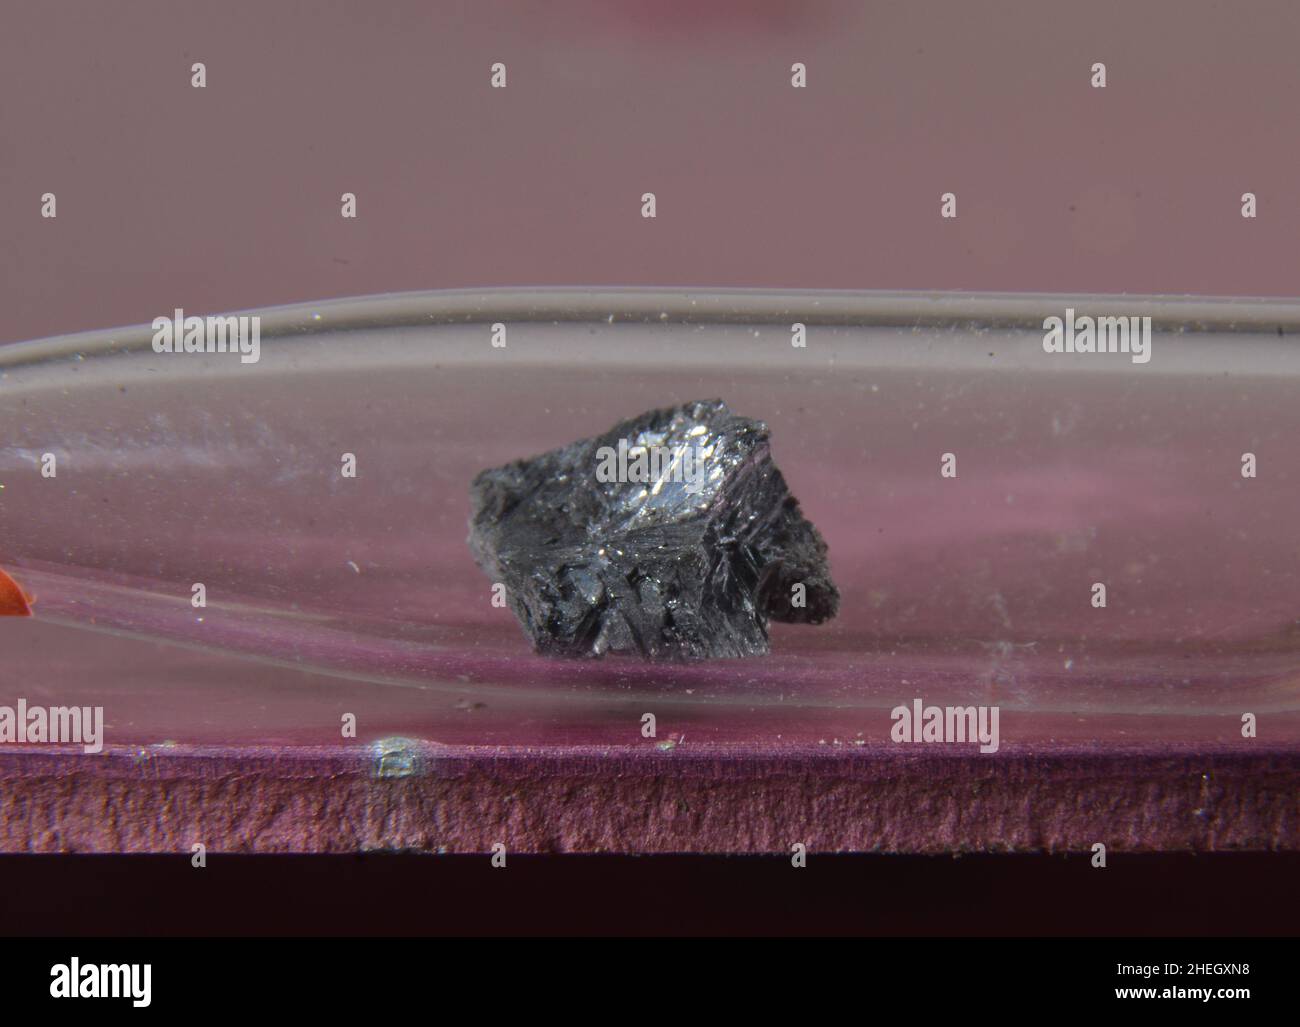 Microfotografía de una muestra del elemento periódico No. 33: Arsénico. El metal tóxico se almacena en una ampolla de vidrio Foto de stock